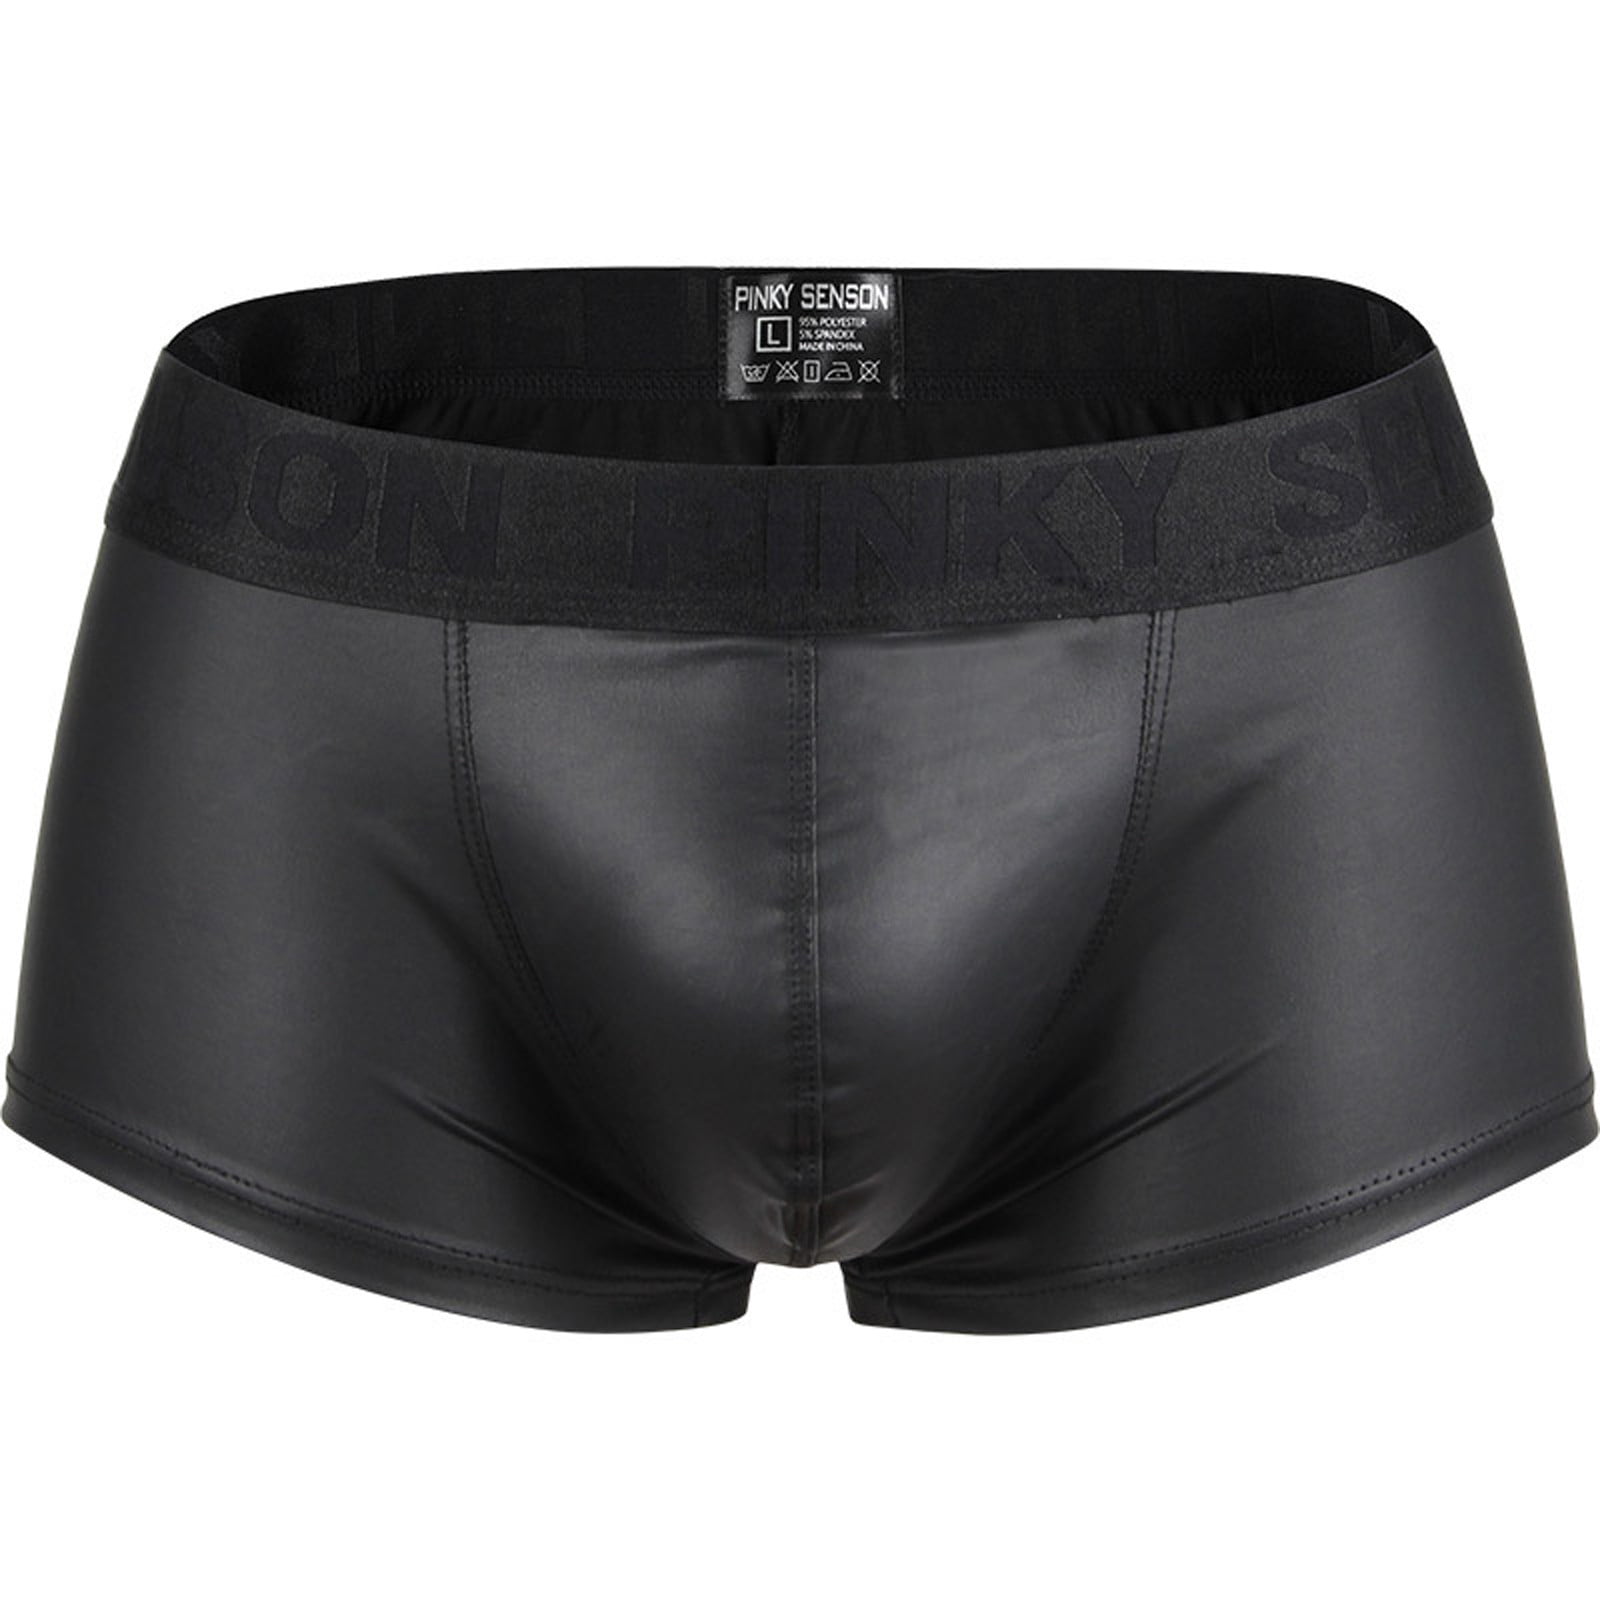 Kayannuo Sexy Underwear For Men Clearance Ultra Thin Sexy Perspective  Printing Sexy Underwear Men's Briefs Bag Underwear Men